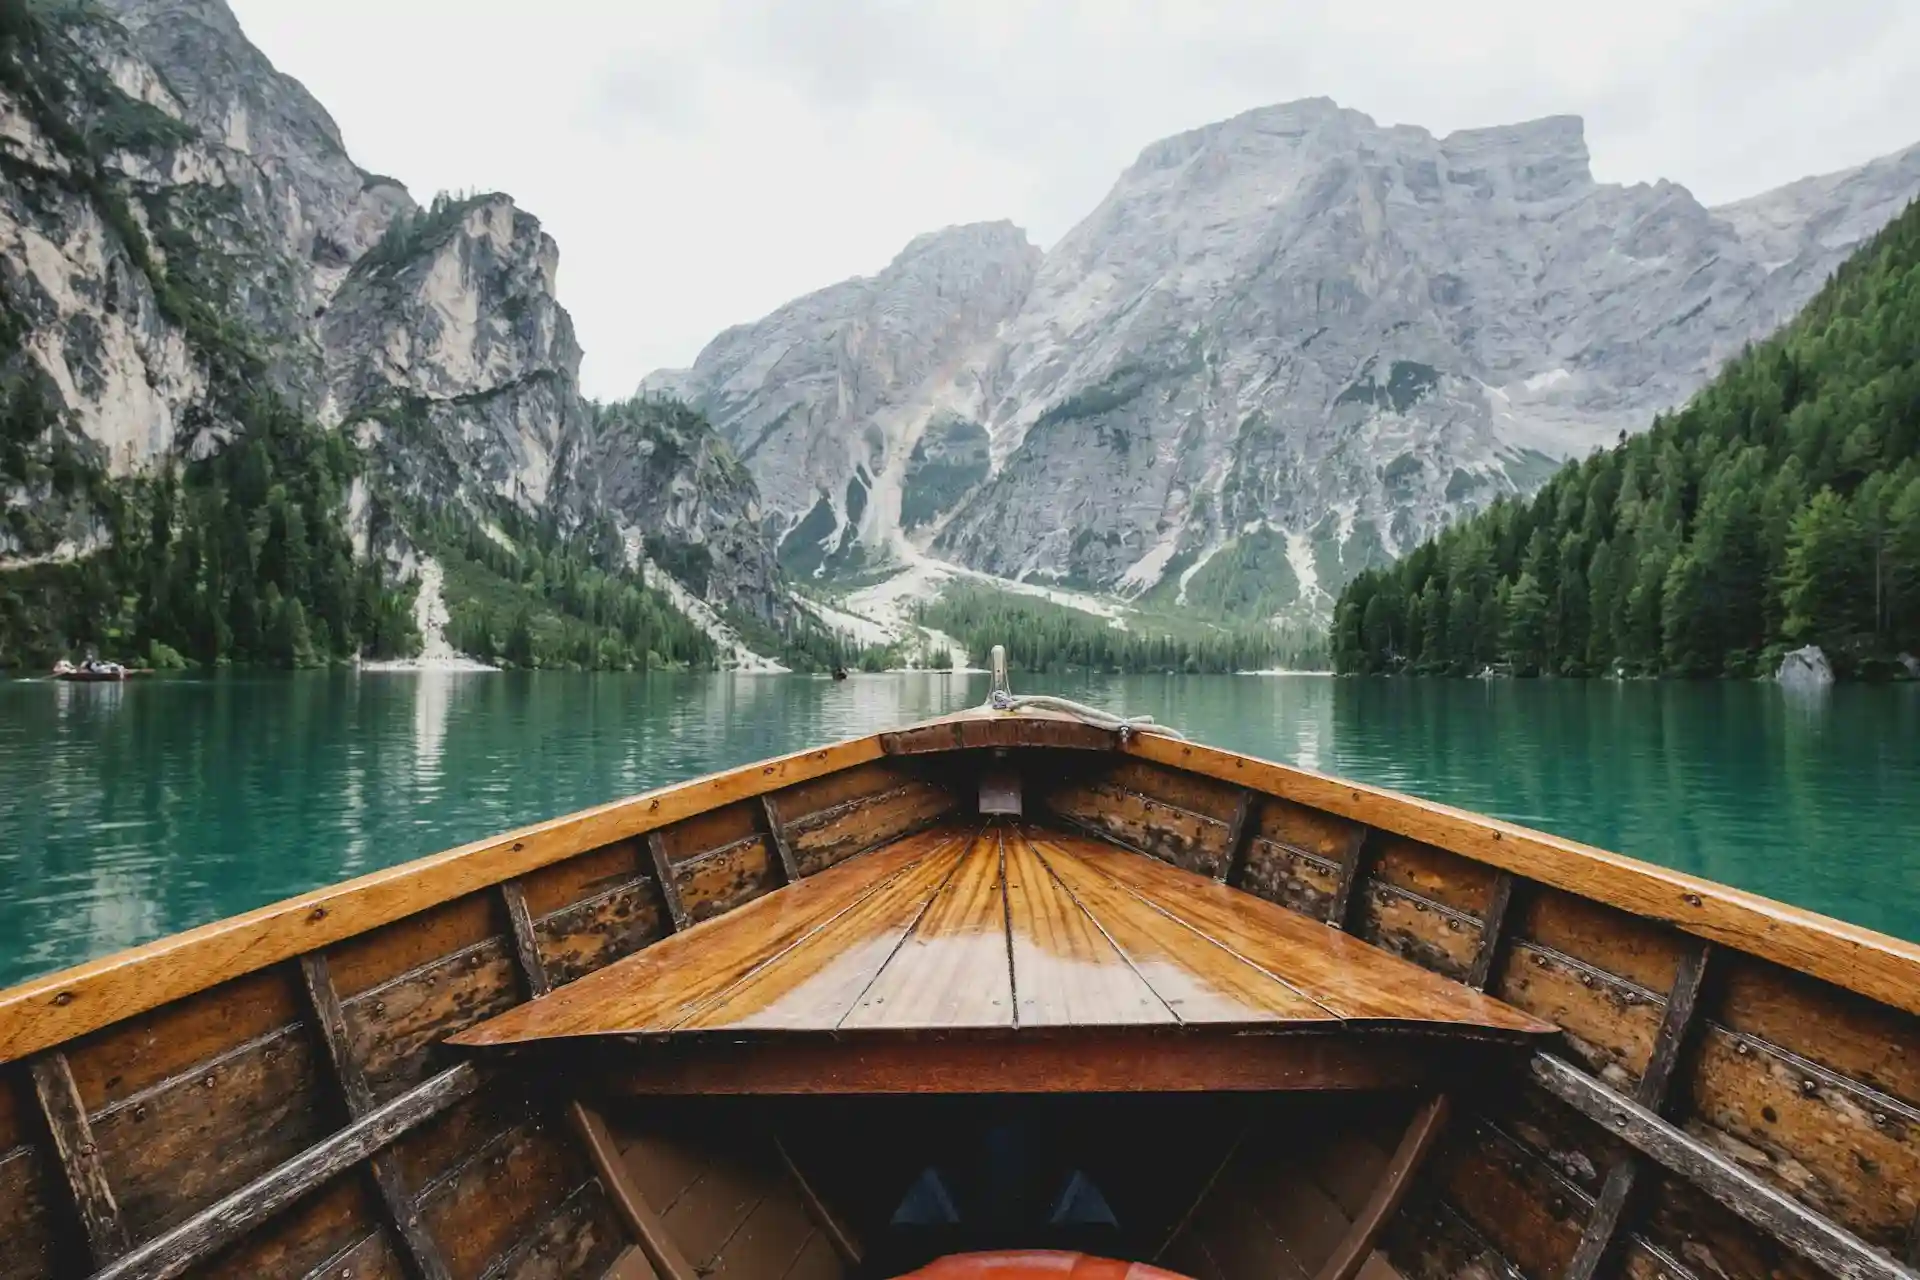 قارب في بحيرة بمياه خضراء على خلفية جبال